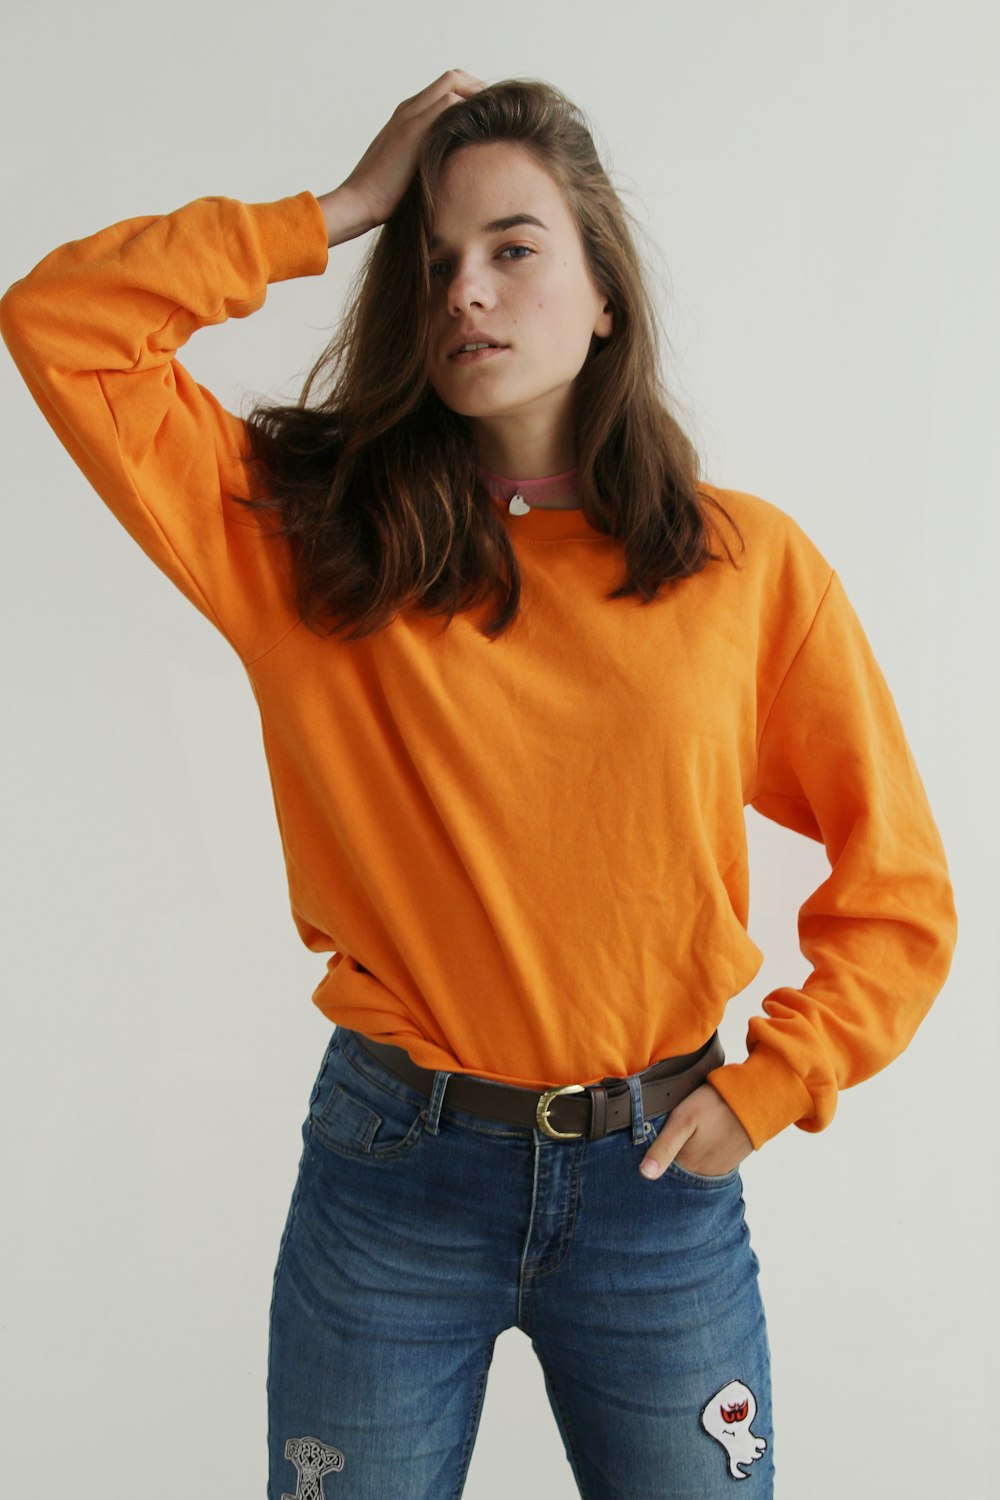 Frau trägt orangefarbenes Sweatshirt mit Rundhalsausschnitt und steht, während sie die rechte Hand auf ihren Kopf legt